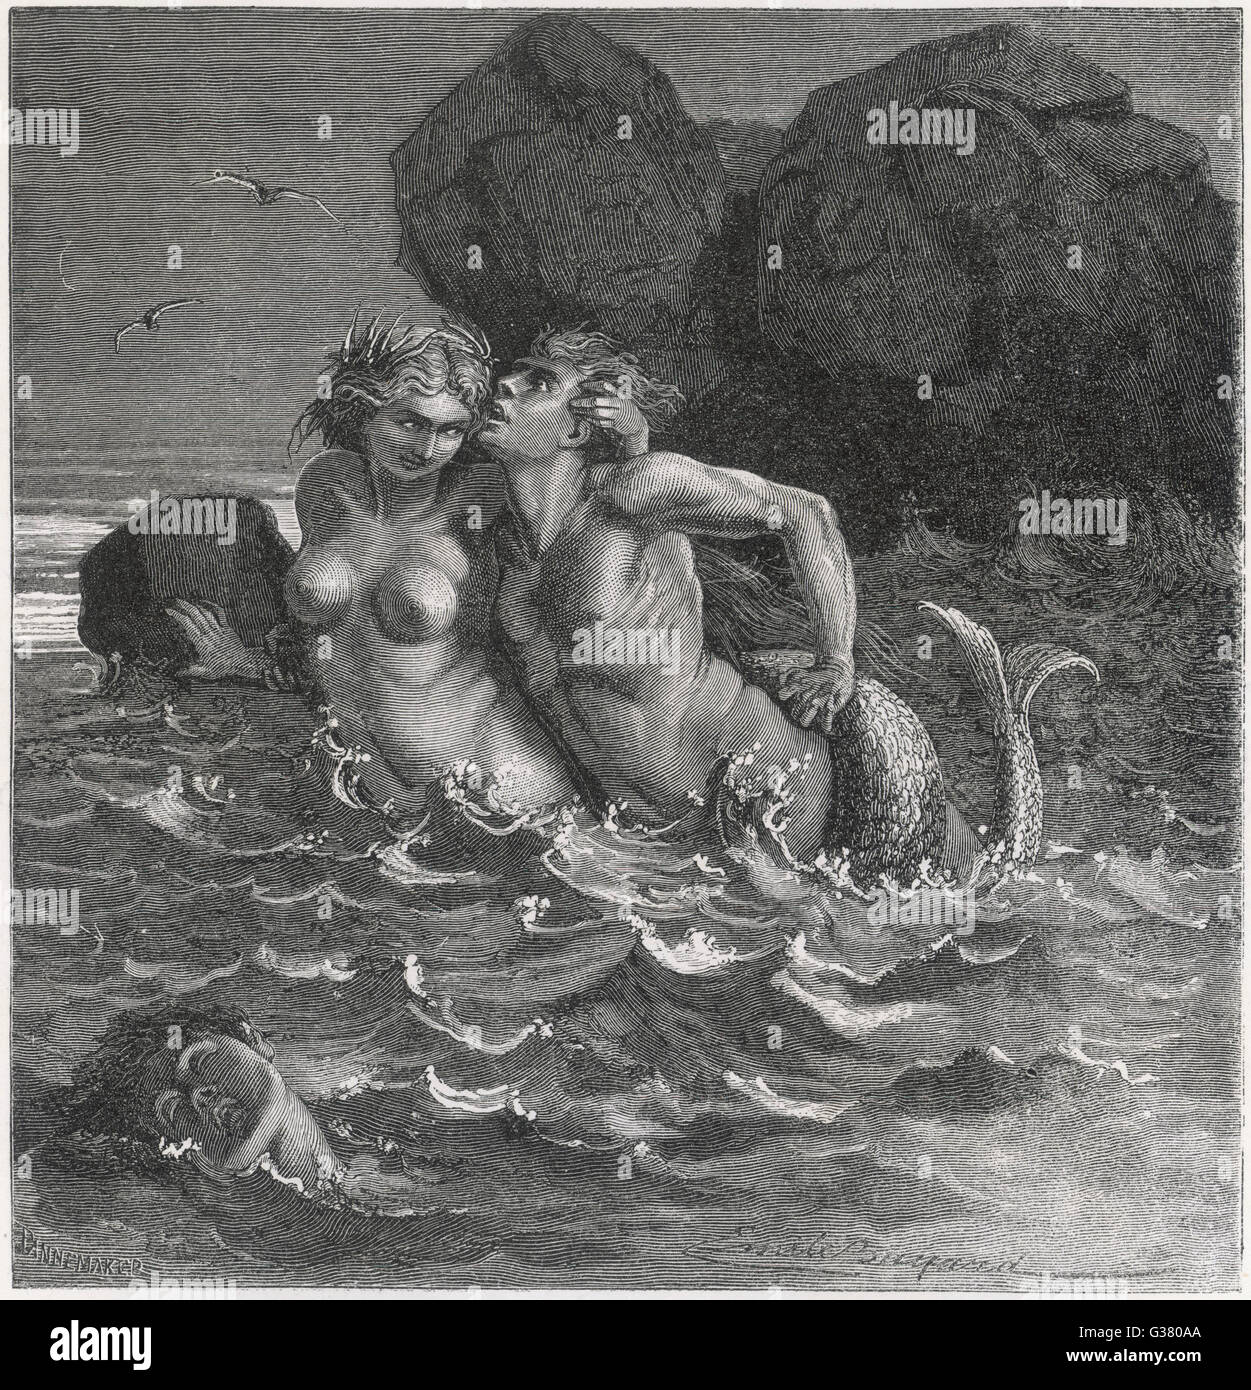 Une sirène s'enroule sa queue autour de l'amant et le traîne à sa perte Date : 1919 Banque D'Images